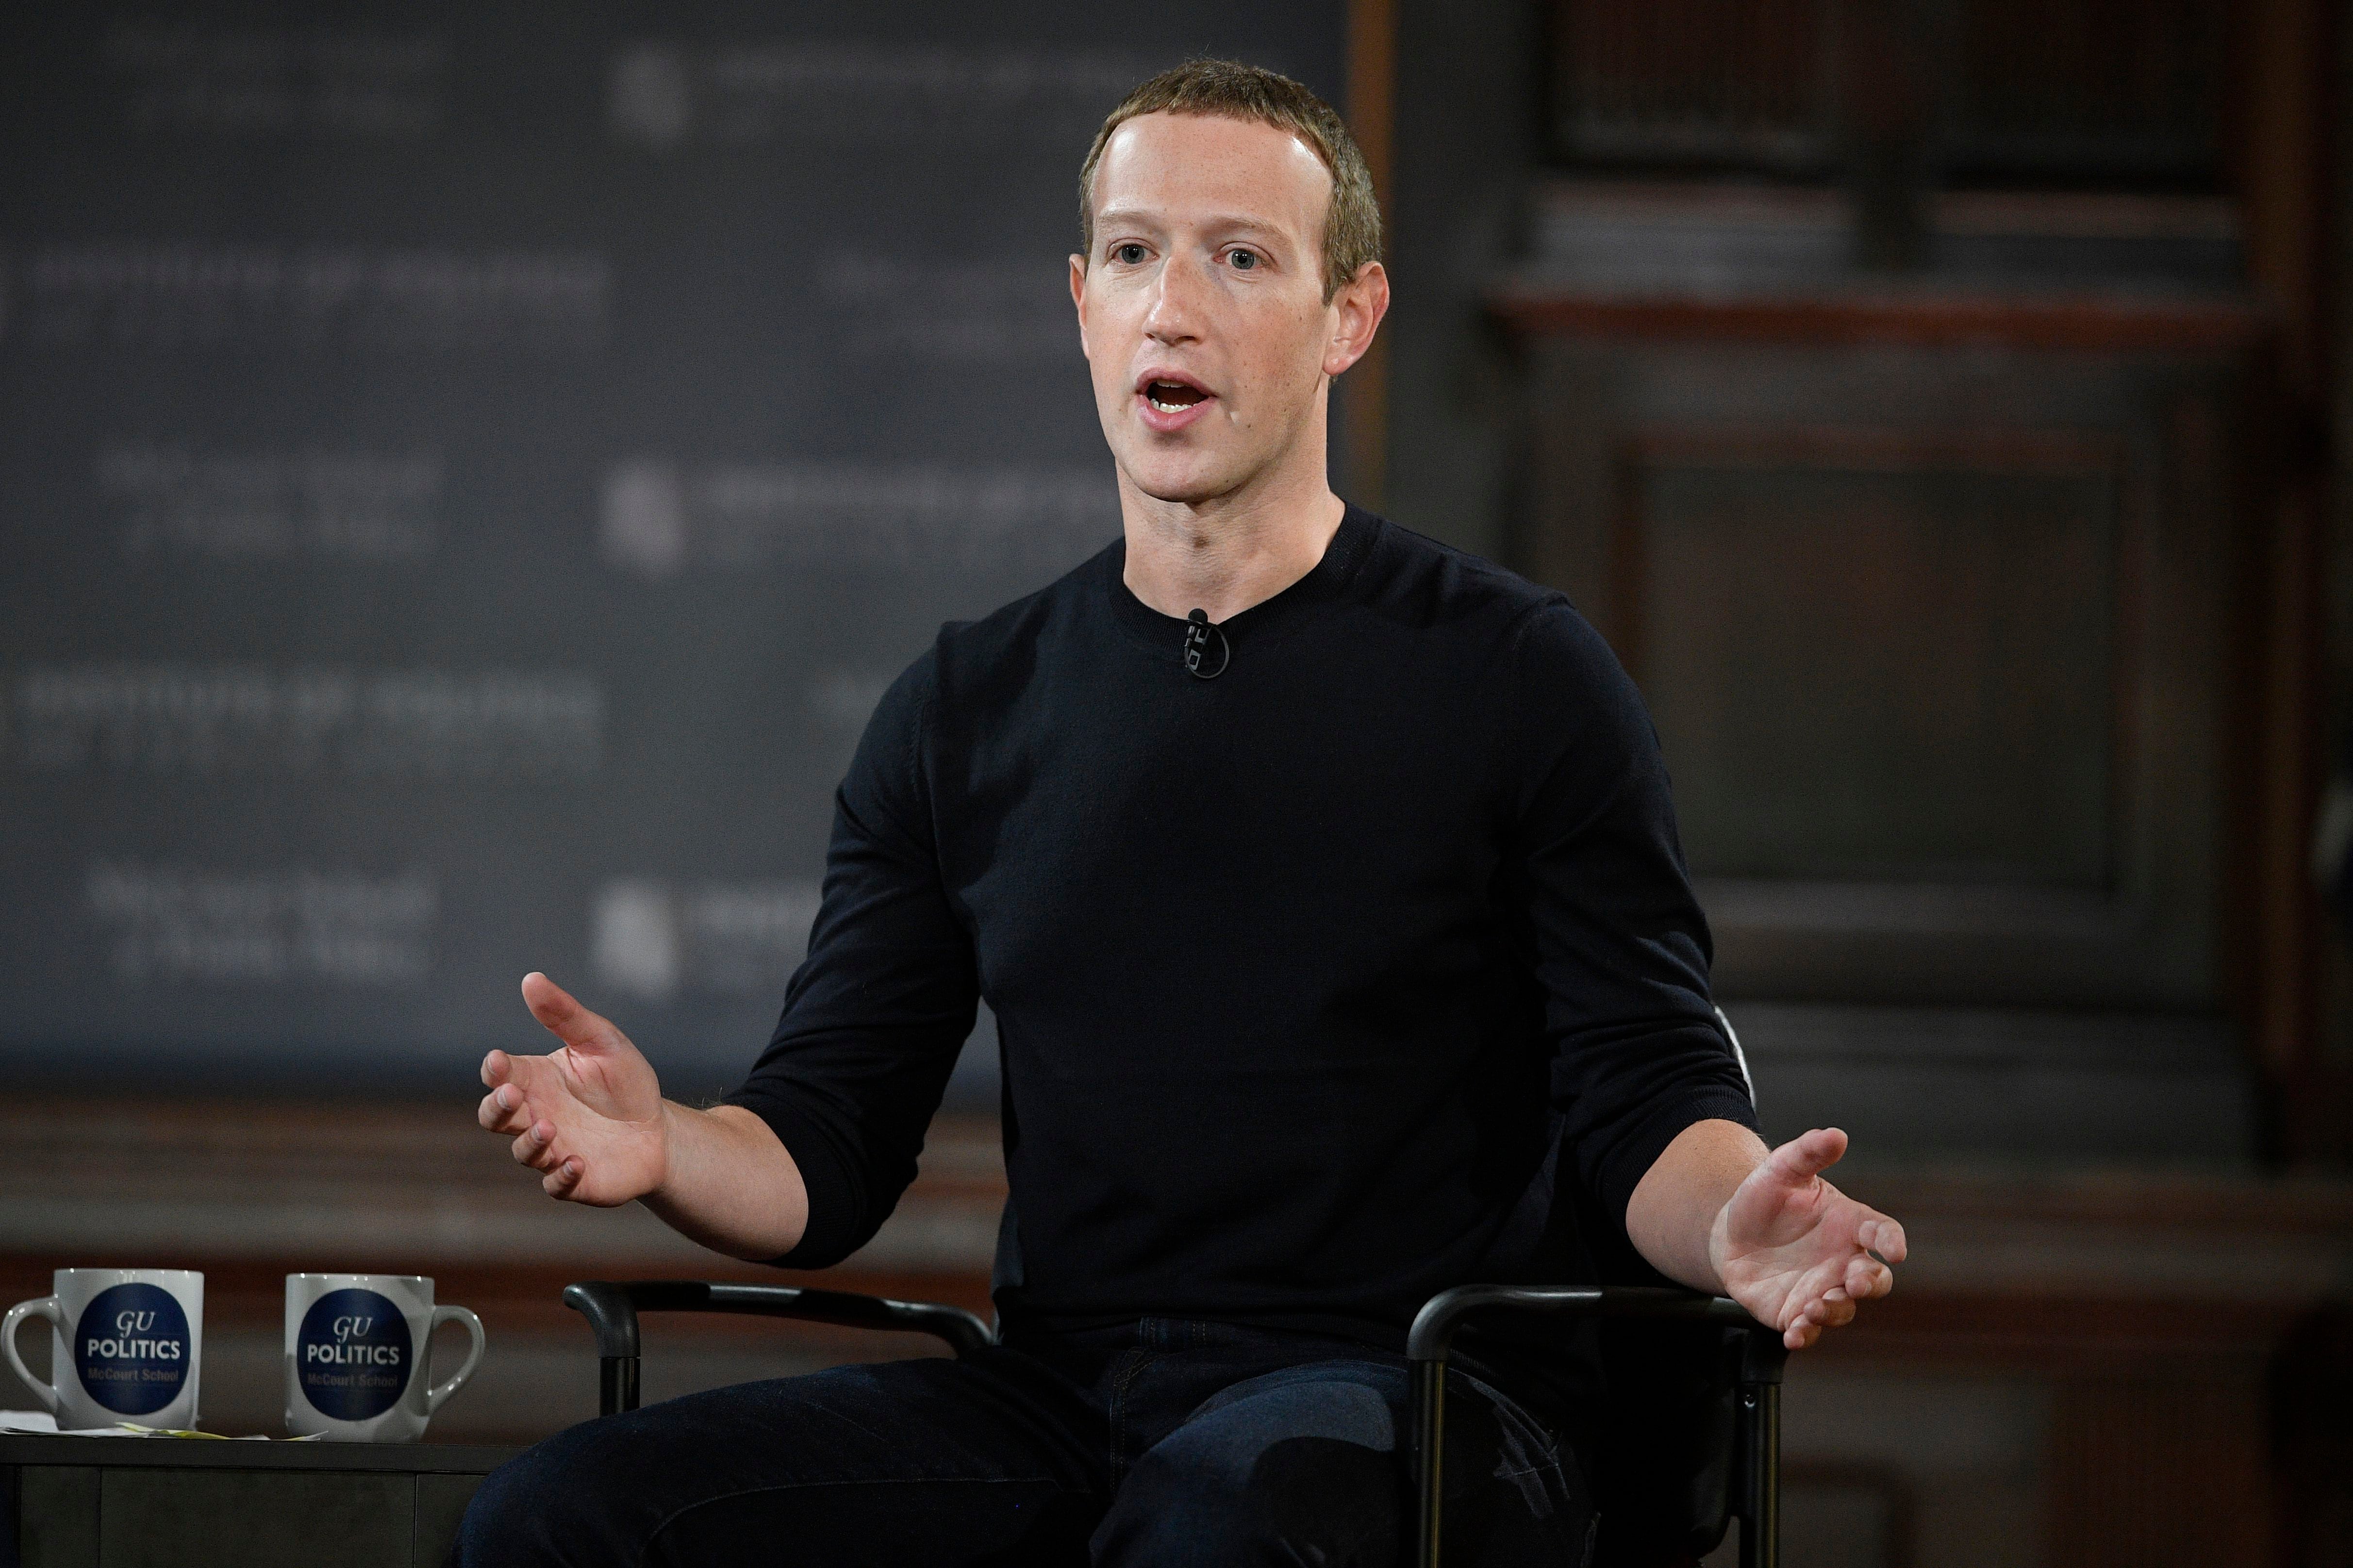 Zuckerberg aseguró que el establishment científico obligó a la eliminación de publicaciones sobre coronavirus en Facebook que acabaron siendo ciertas (AP)